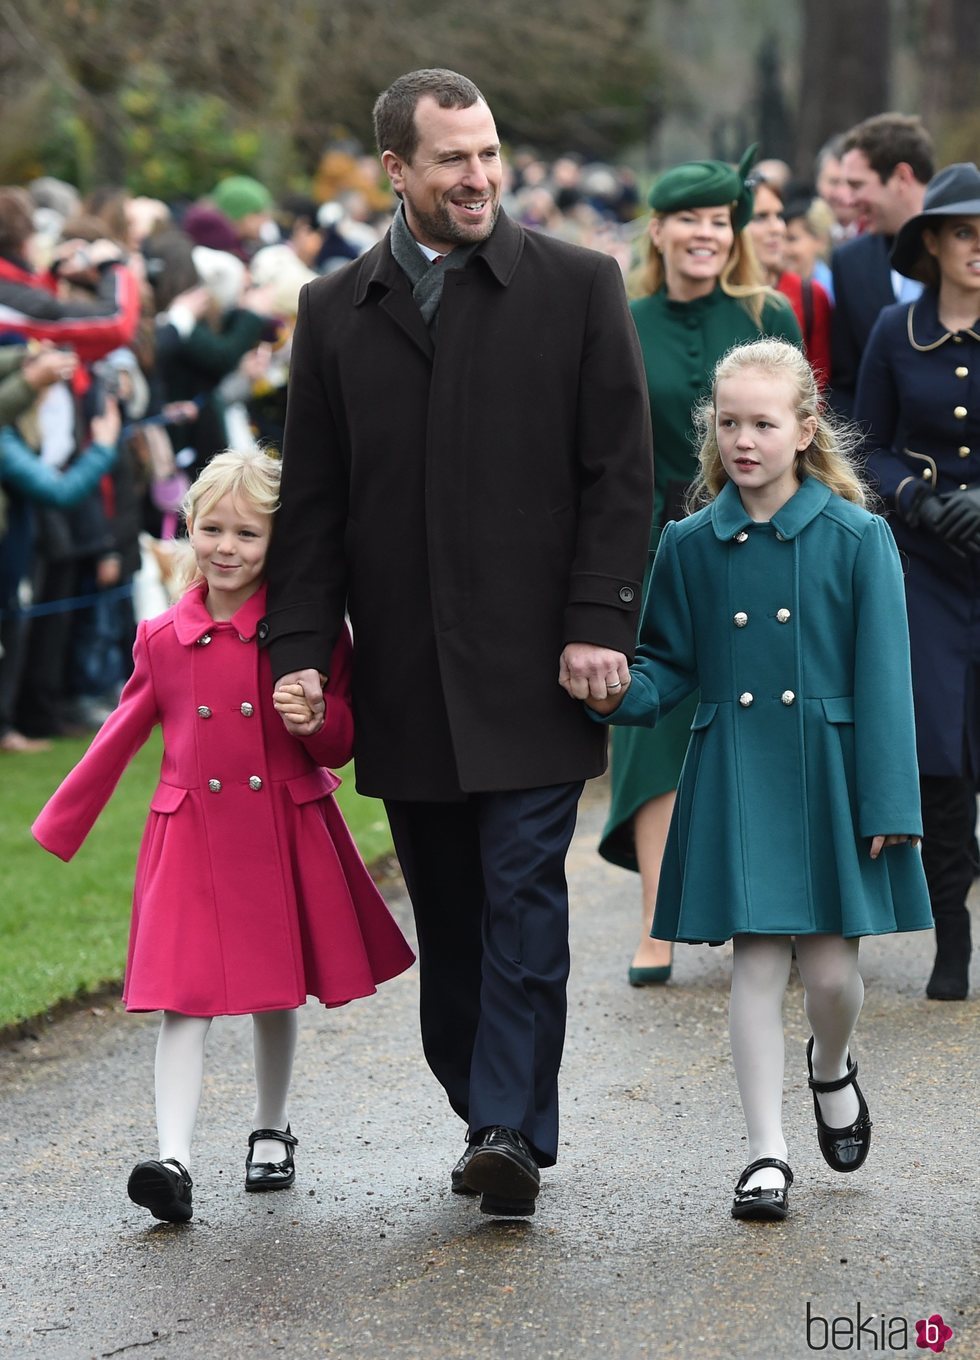 Peter Phillips y sus hijas llegando a la Misa de Navidad 2018